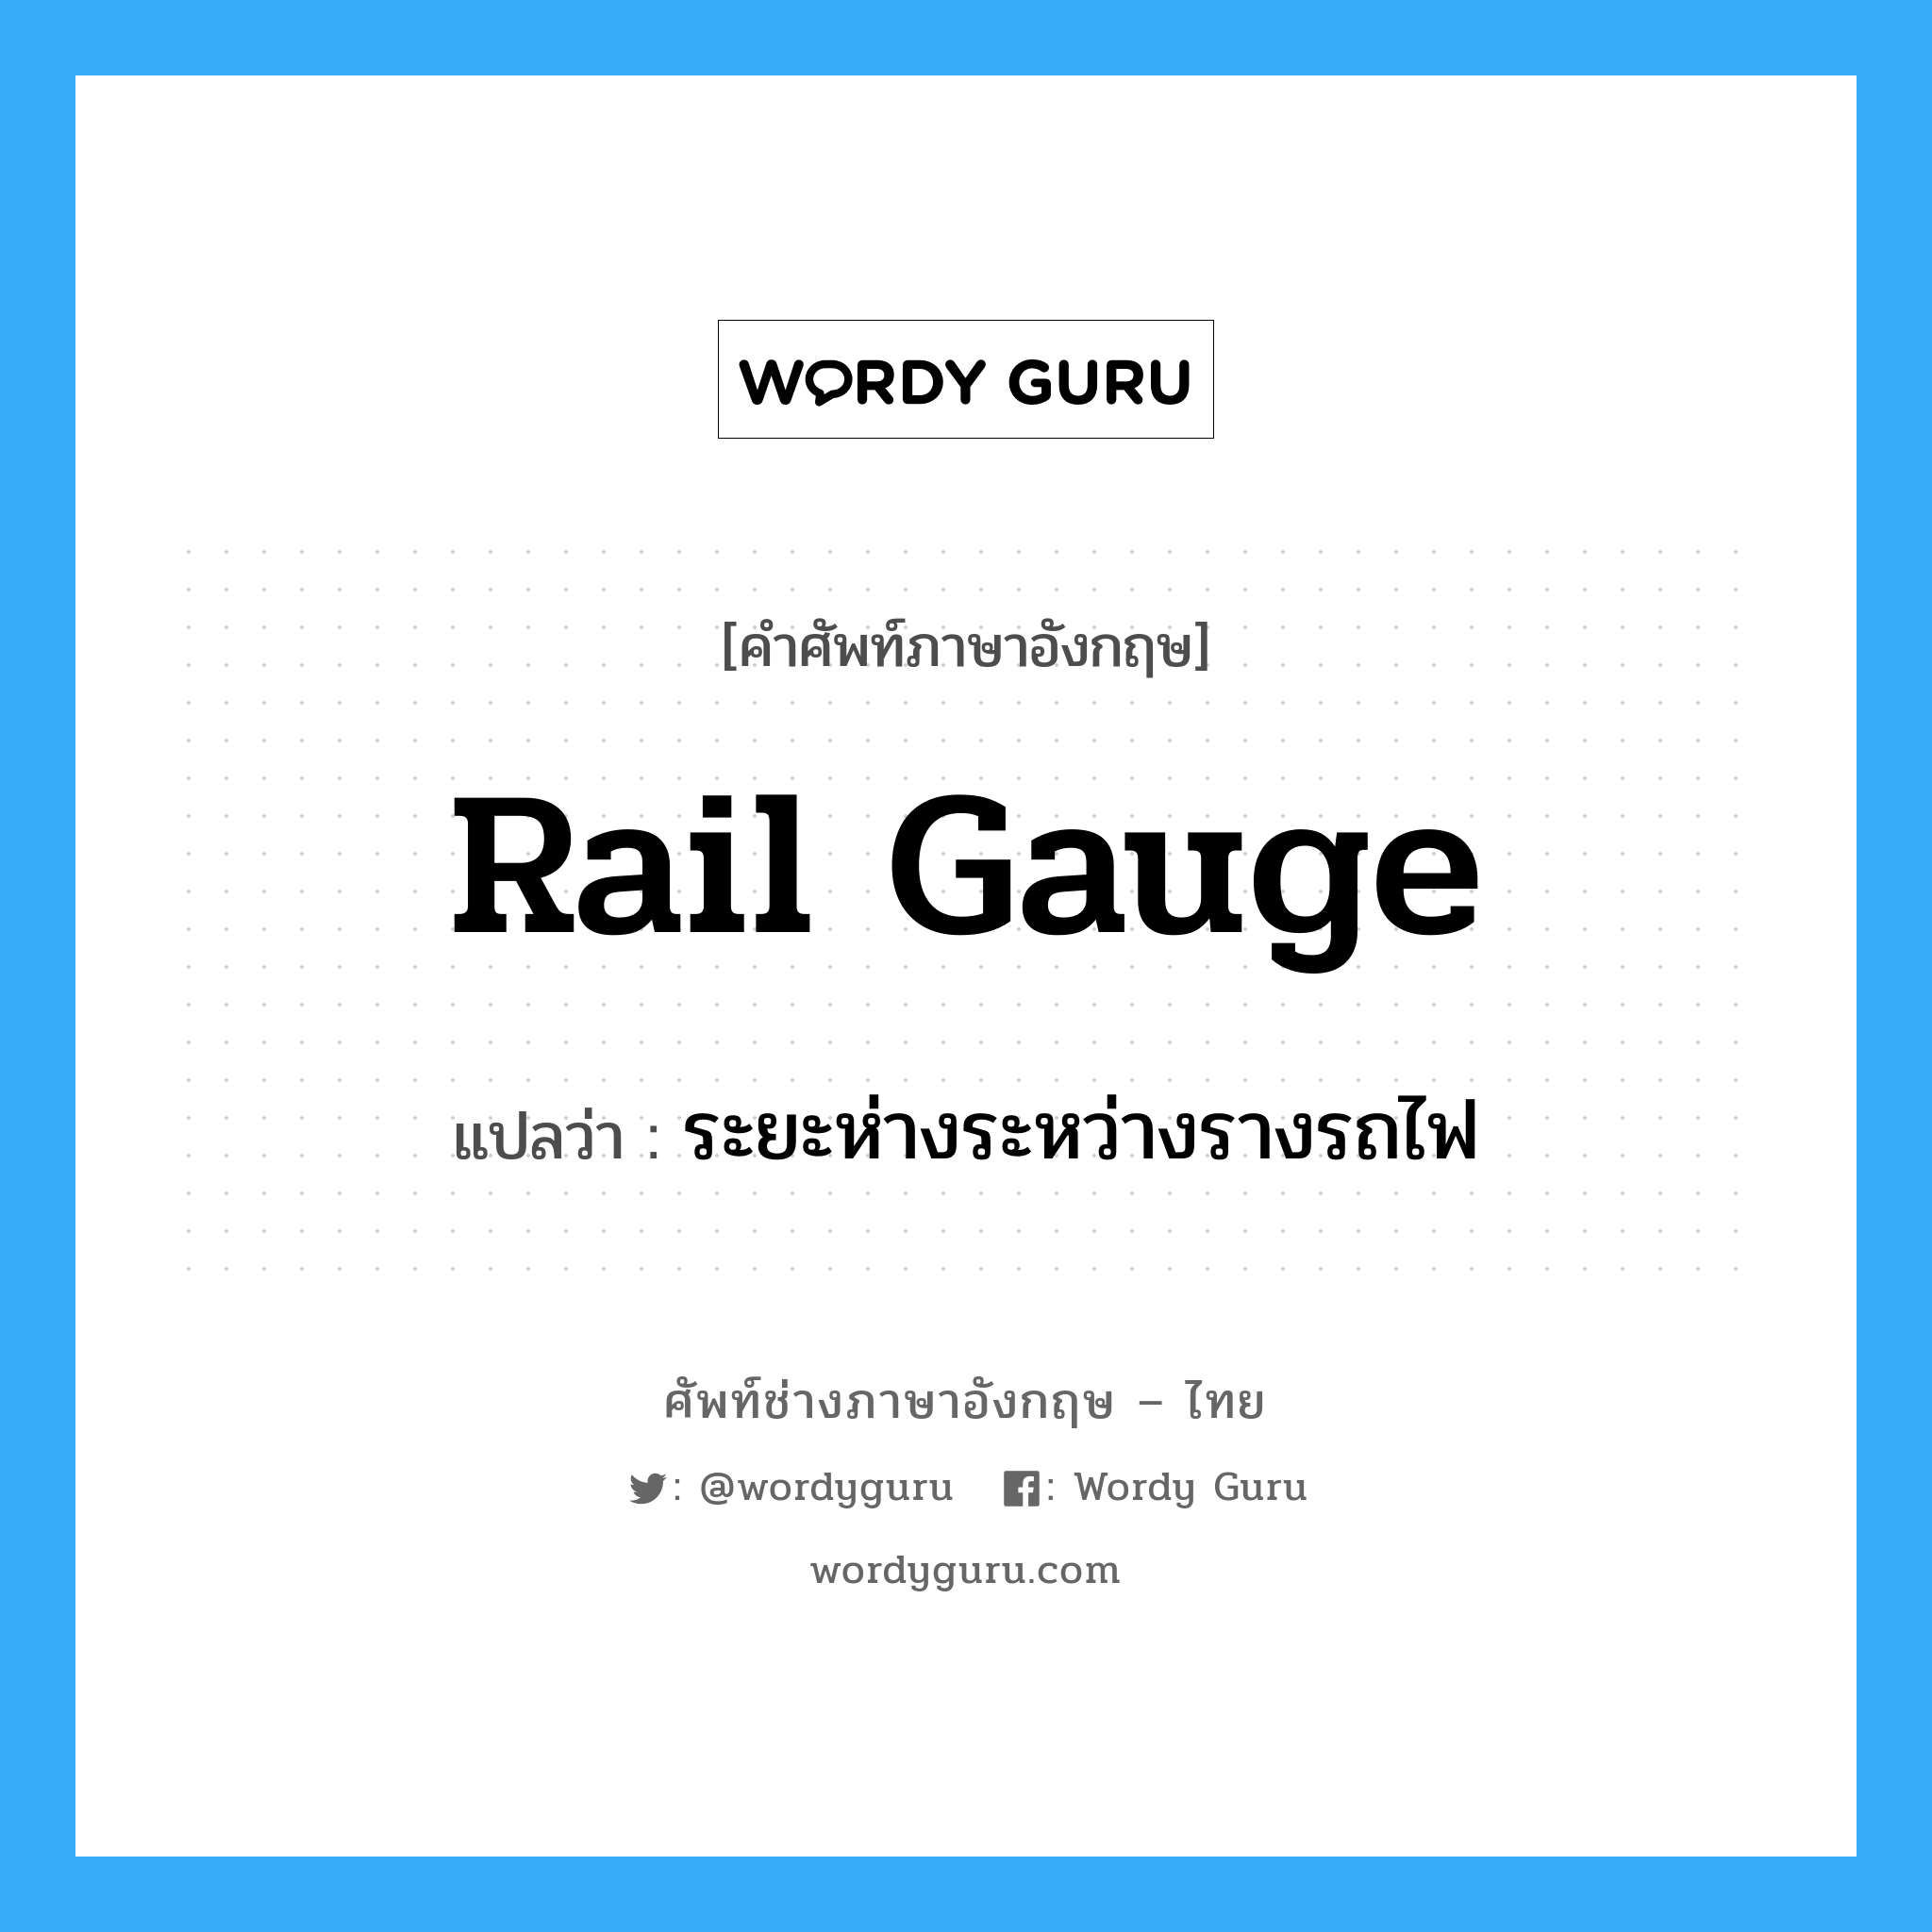 ระยะห่างระหว่างรางรถไฟ ภาษาอังกฤษ?, คำศัพท์ช่างภาษาอังกฤษ - ไทย ระยะห่างระหว่างรางรถไฟ คำศัพท์ภาษาอังกฤษ ระยะห่างระหว่างรางรถไฟ แปลว่า rail gauge